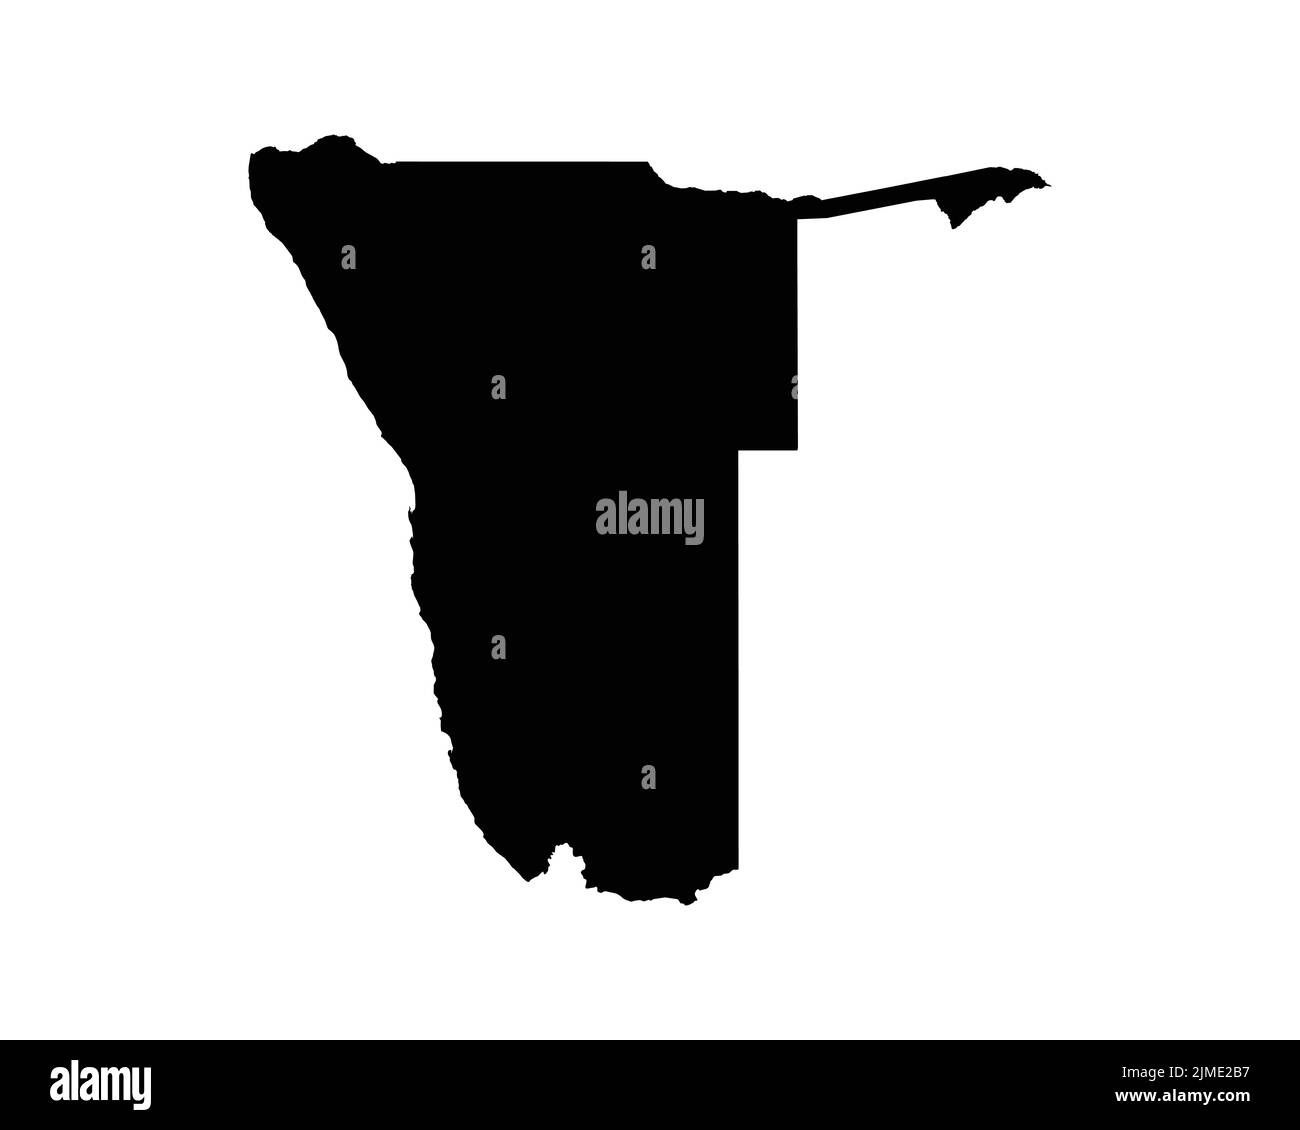 Namibia-Karte. Namibische Landkarte. Schwarz-Weiß National Nation Gliederung Geographie Grenze Grenzform Territorium Vektor Illustration EPS Clipart Stock Vektor